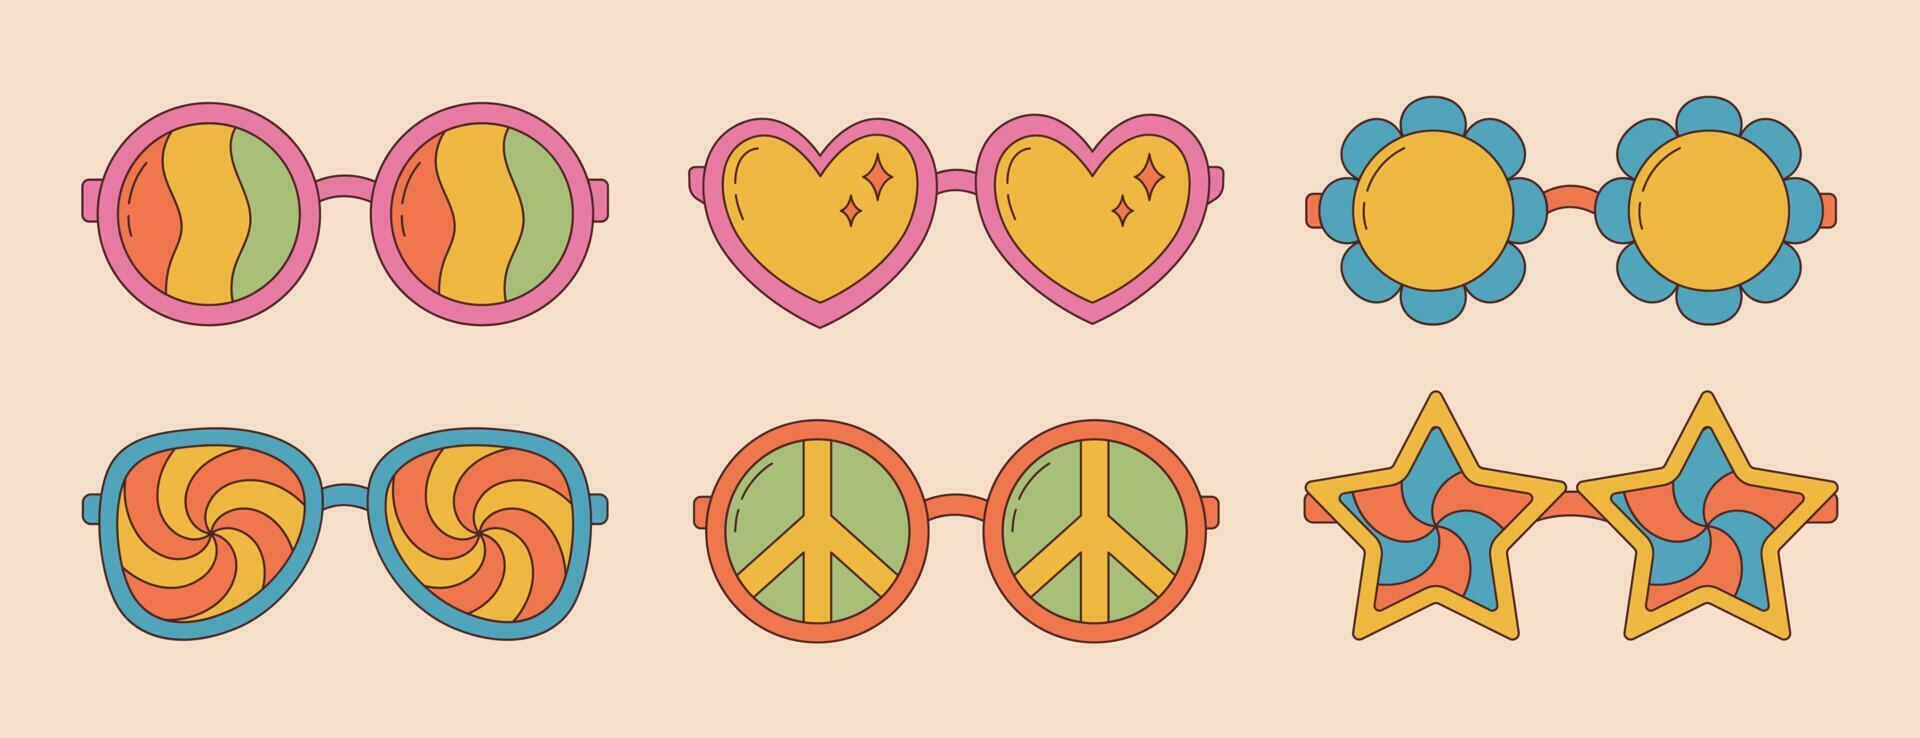 coleção do groovy hippie oculos de sol dentro na moda retro Década de 1970 estilo. desenho animado psicodélico elementos. vetor